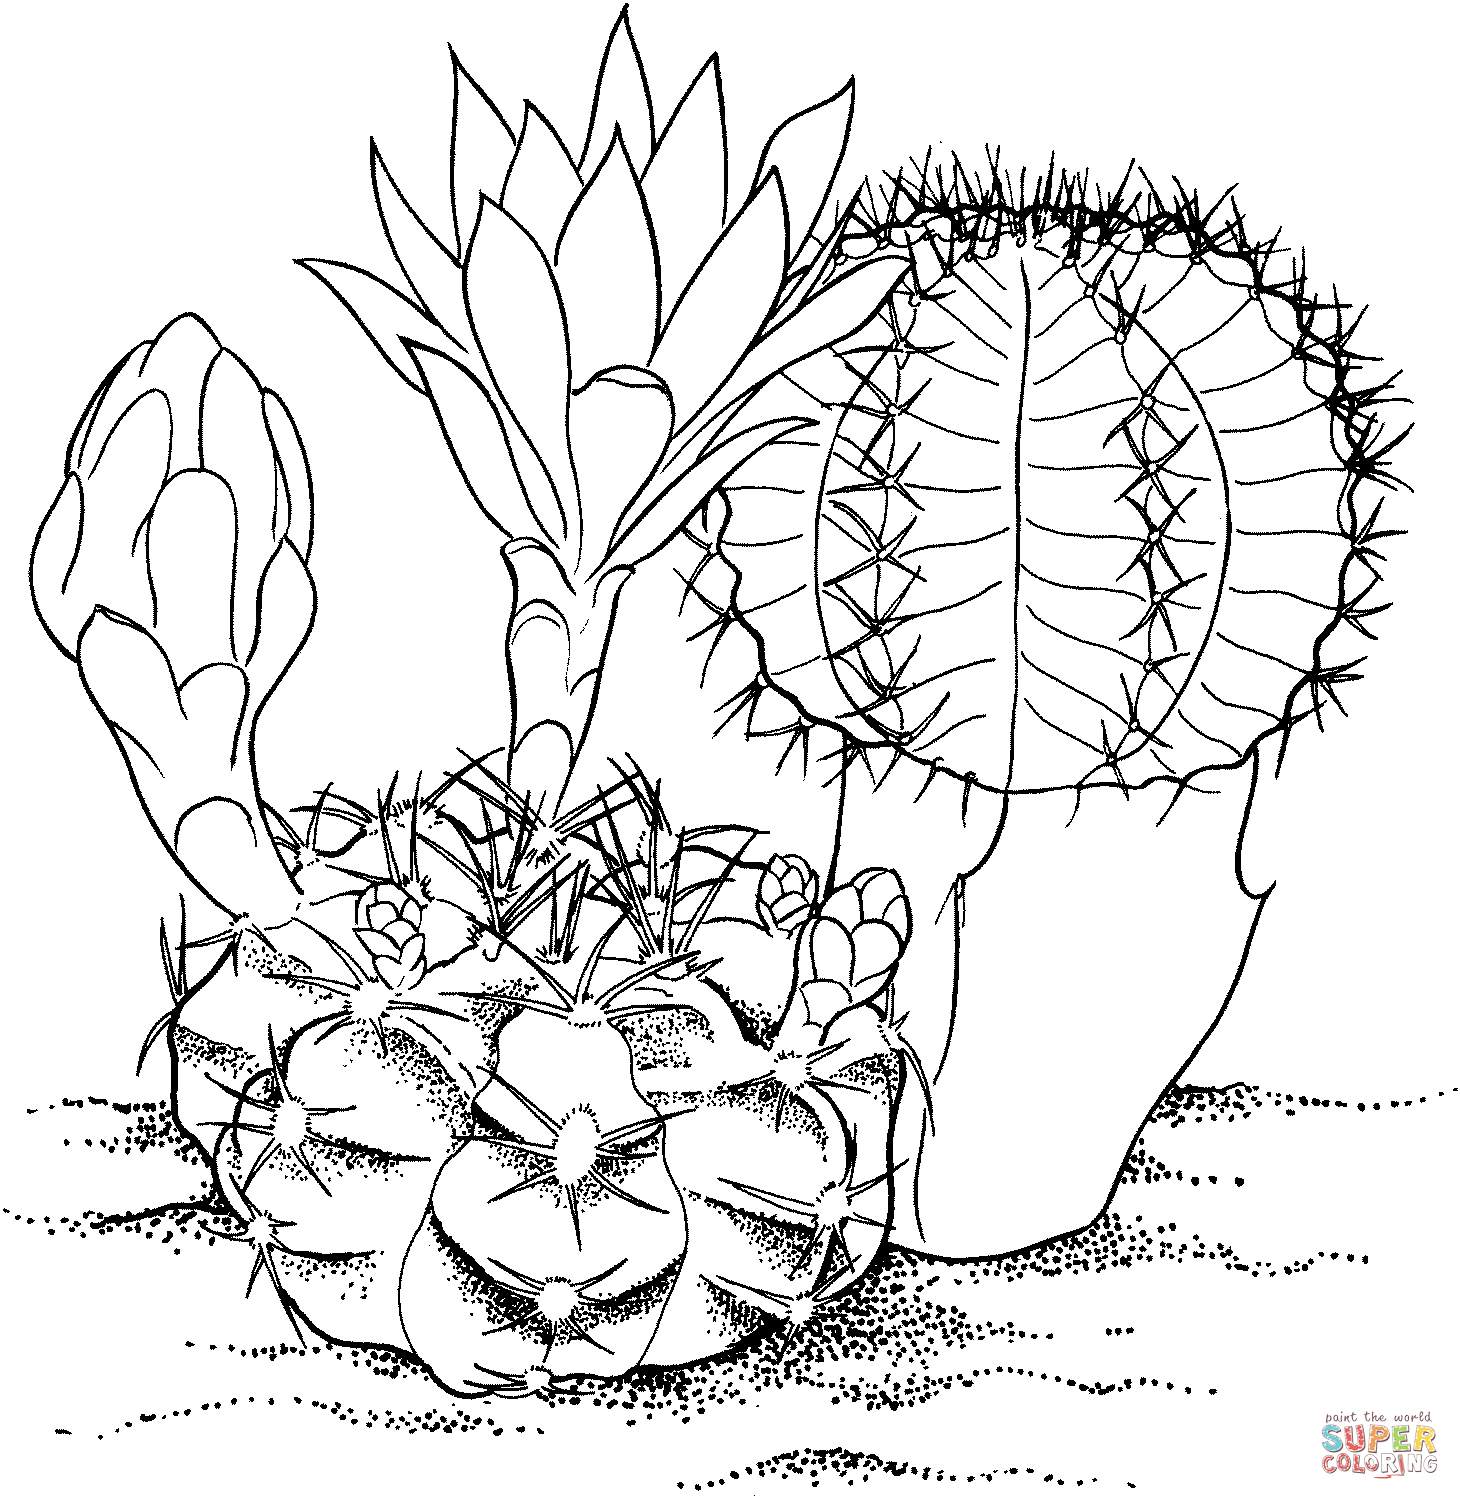 Gymnocalycium mihanovichii ‘Hibotan’ cactus Coloring Pages